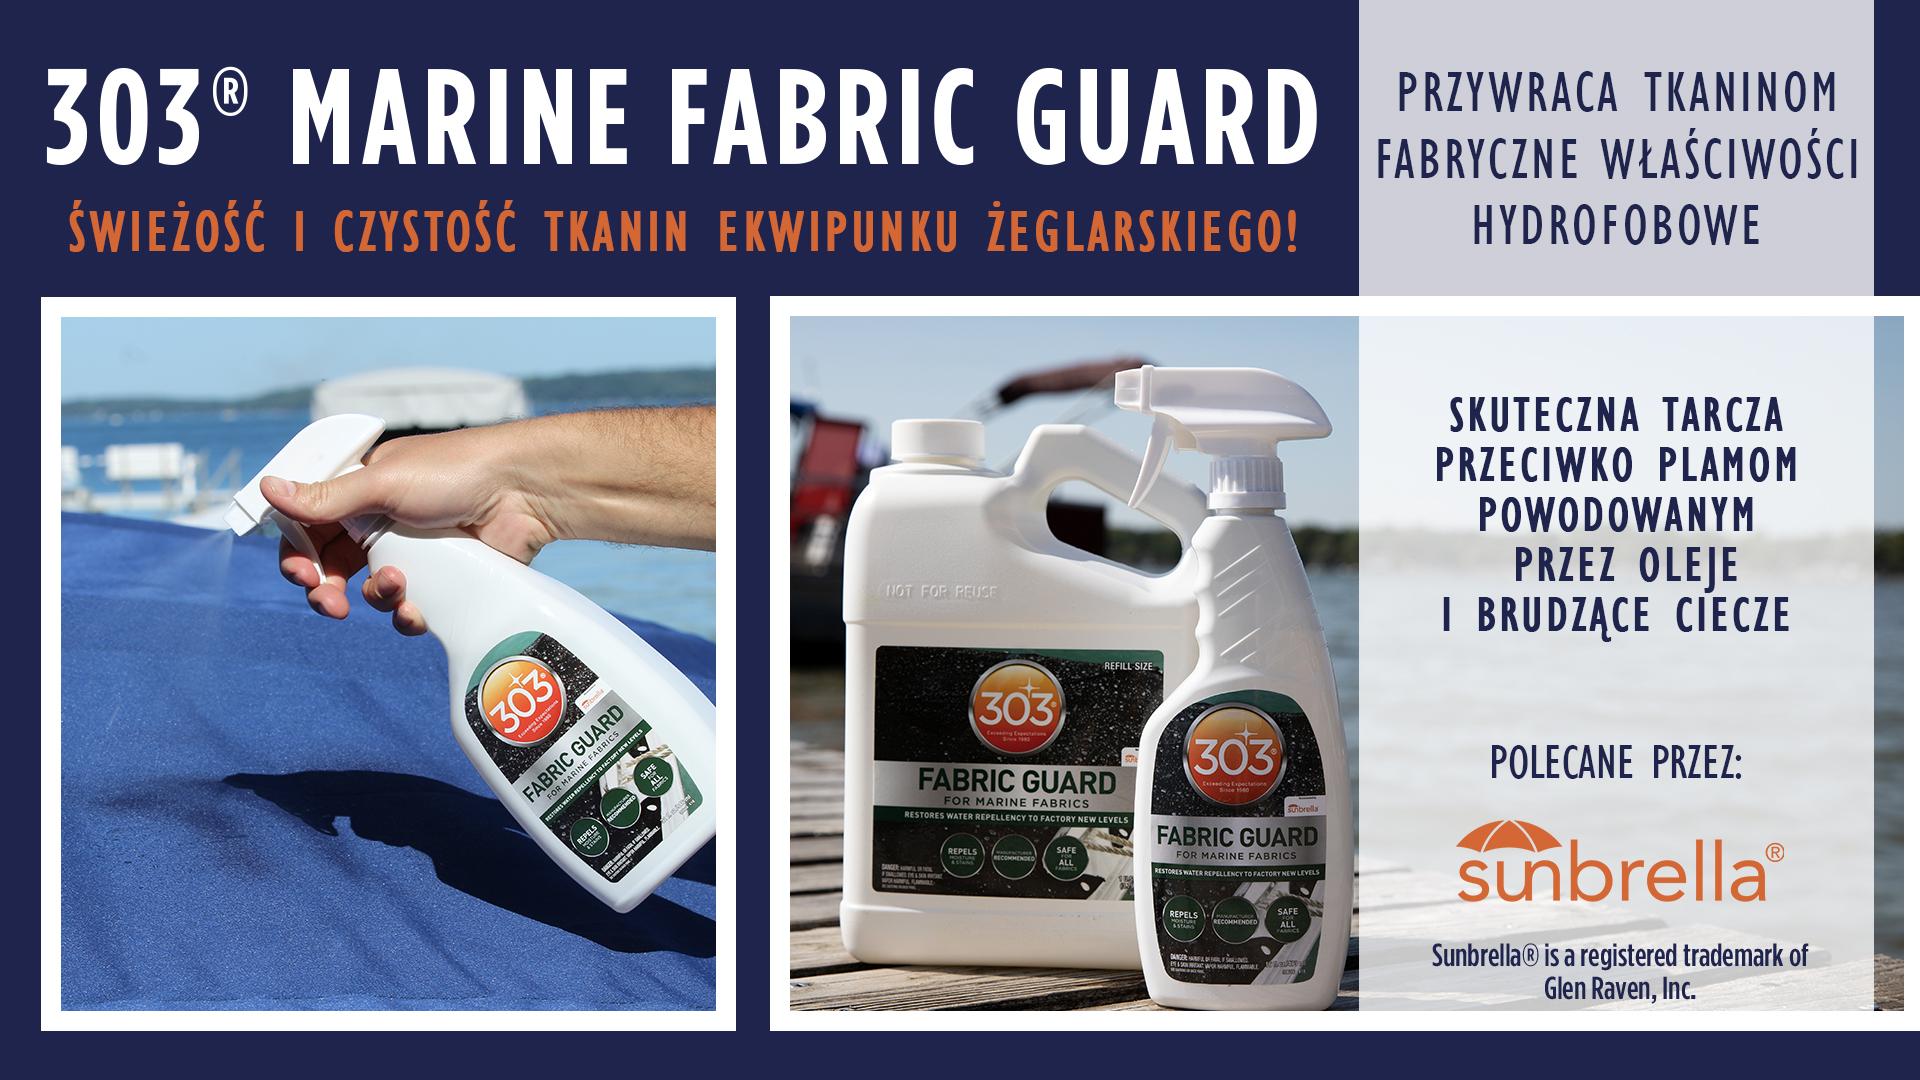 Marine Fabric Guard 1920x1080 PL.jpg